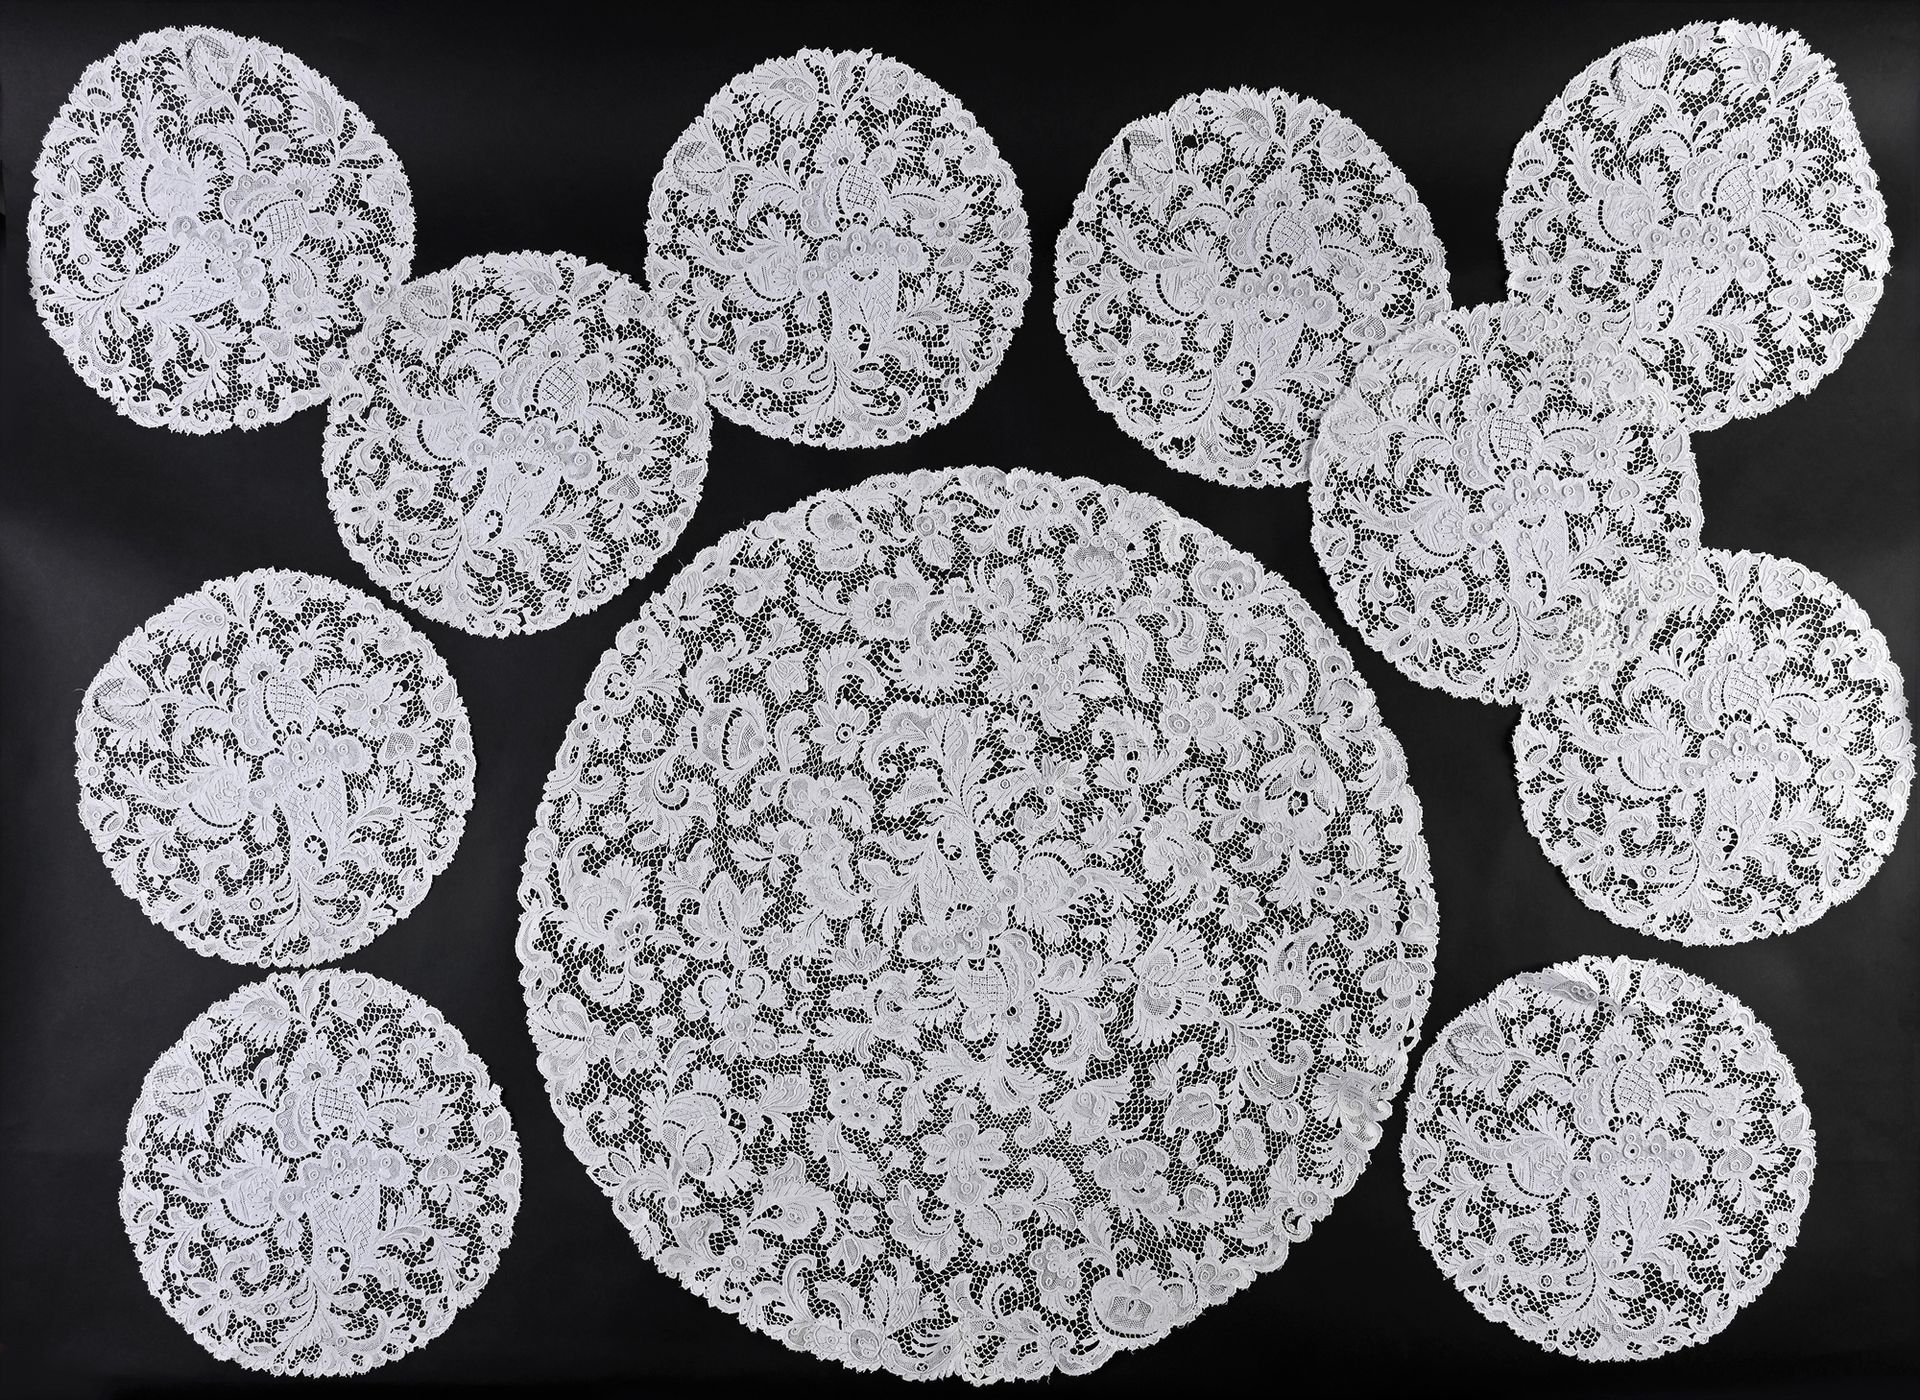 Null 中心装饰和10个斗笠，针刺，20世纪初。
圆形，有密集的花和水果的装饰，采用精细的针刺威尼斯花边。中心器皿的直径：65厘米，斗笠：每个29厘米（状况良&hellip;